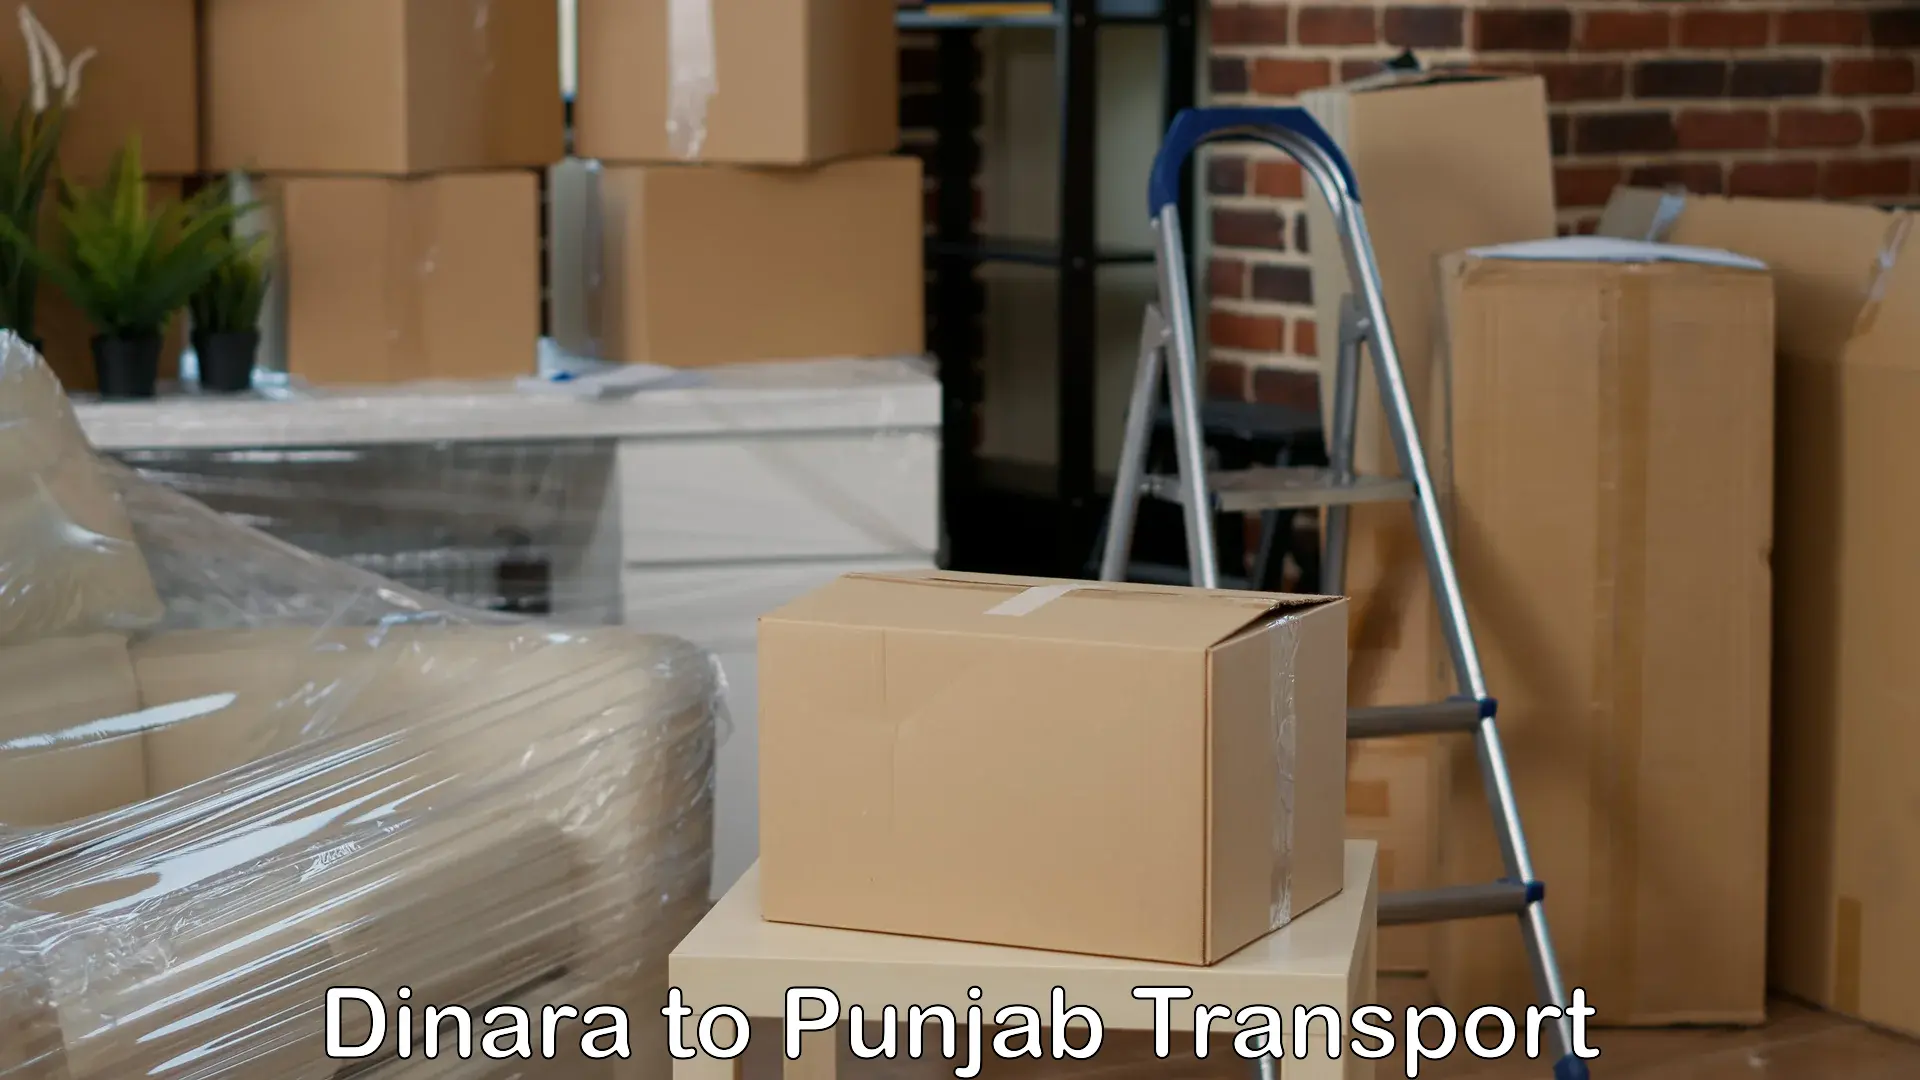 Cargo train transport services Dinara to Rampura Phul